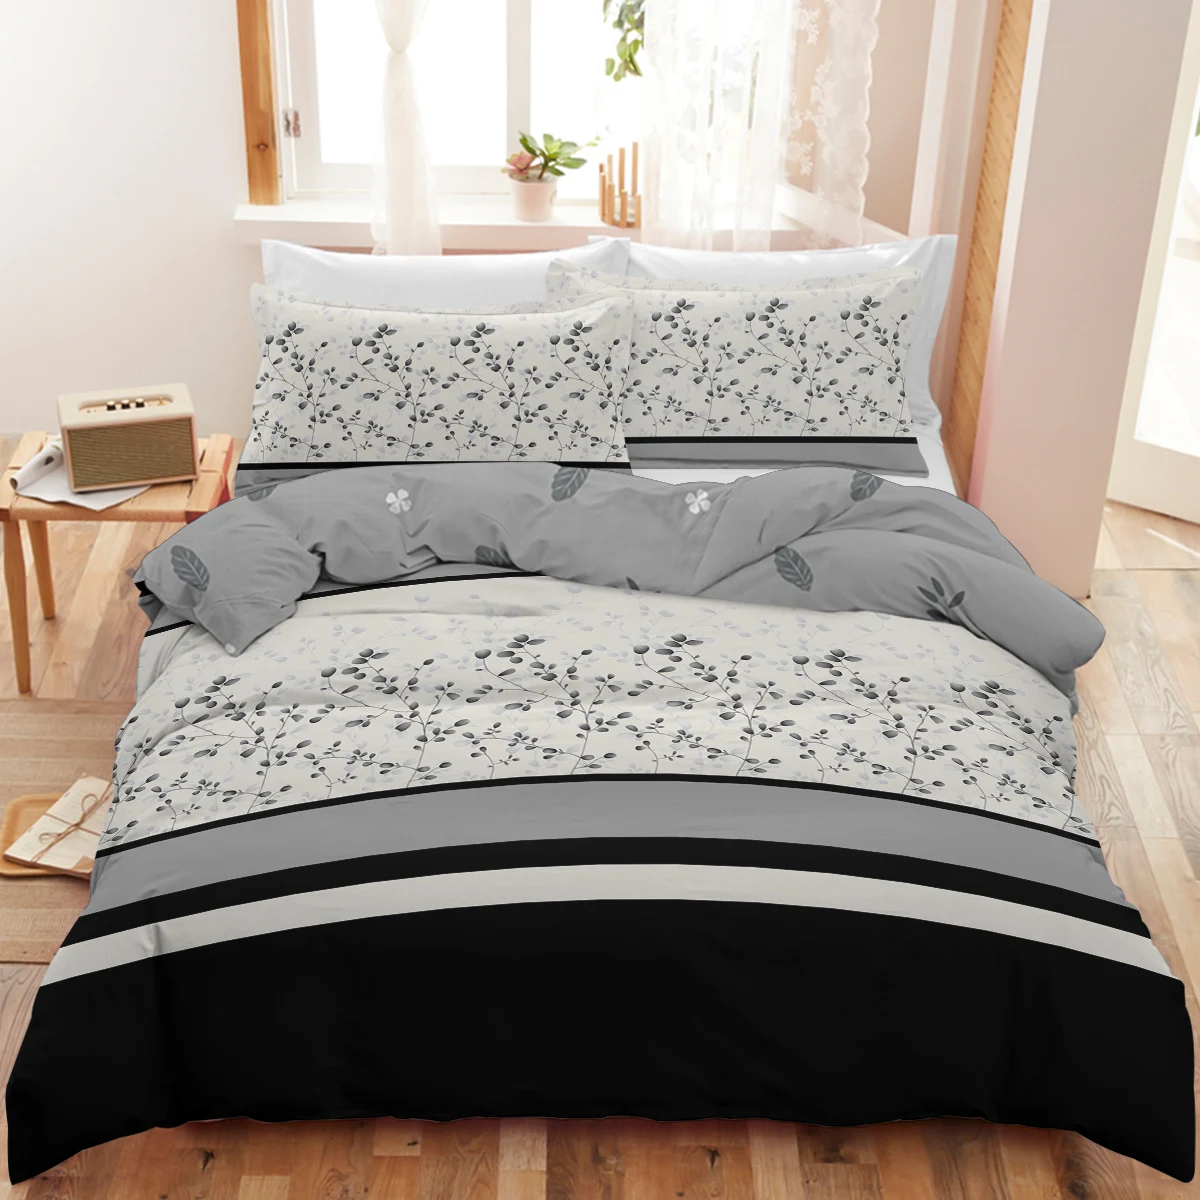 

Комплект постельного белья с серым цветочным пододеяльником из мягкой микрофибры с эффектом потертости, черный и белый цвета, Комплект постельного белья с 2 наволочками